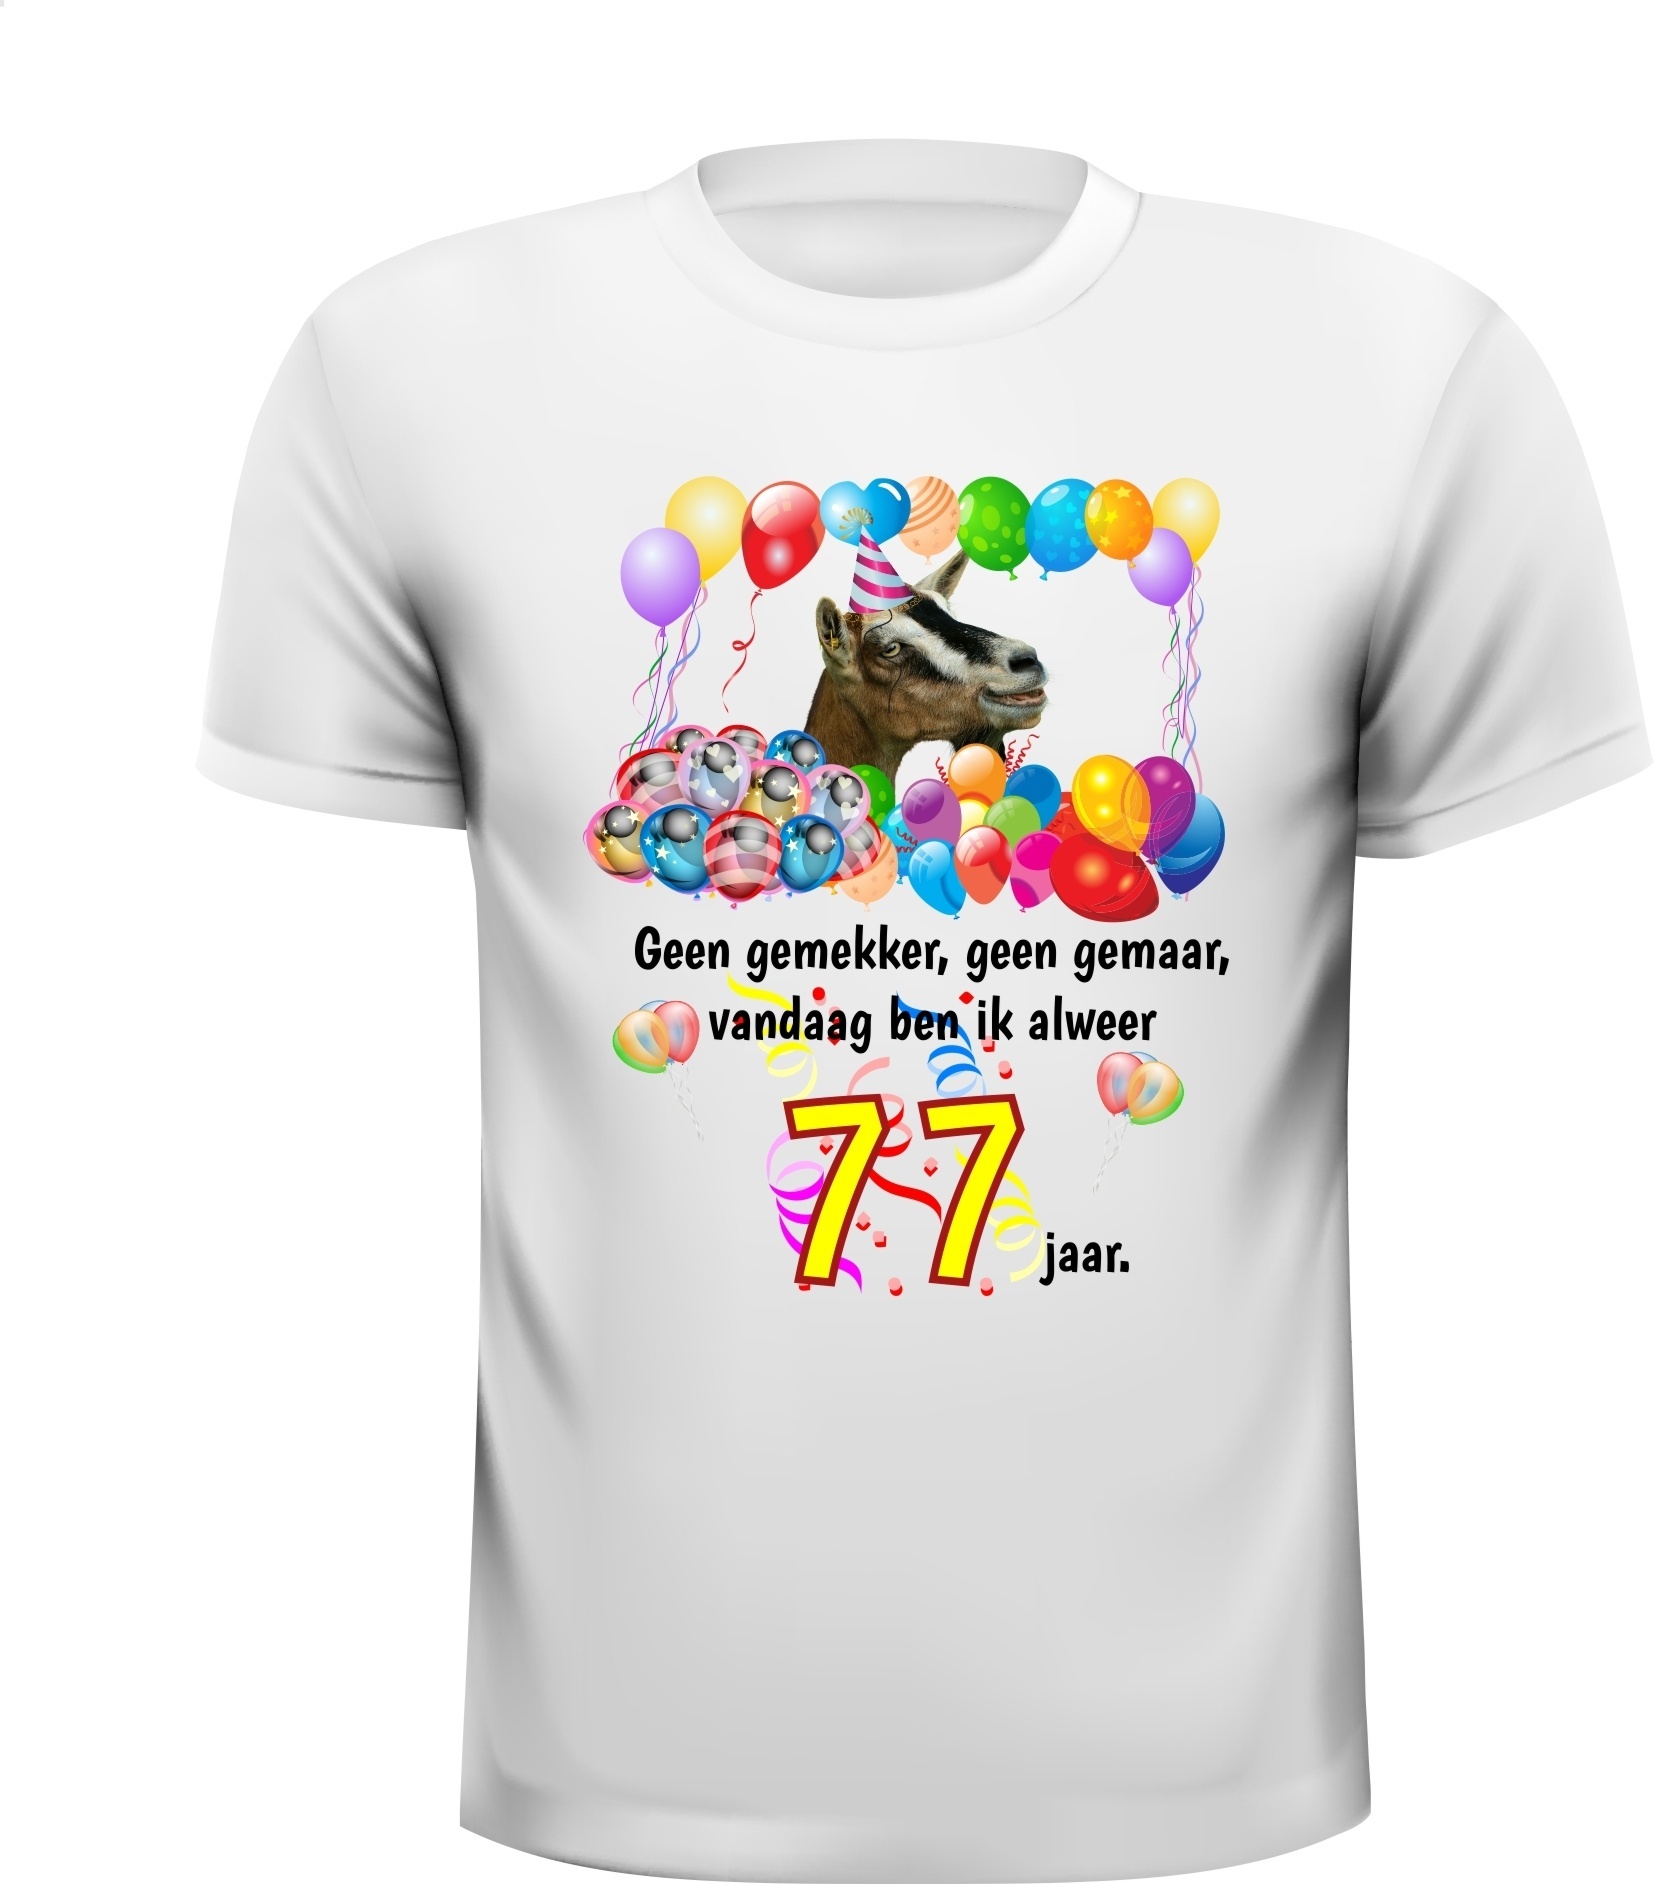 Feestelijk verjaardag shirt vrolijk en kleurrijk 77 jaar print met ballonnen en geit